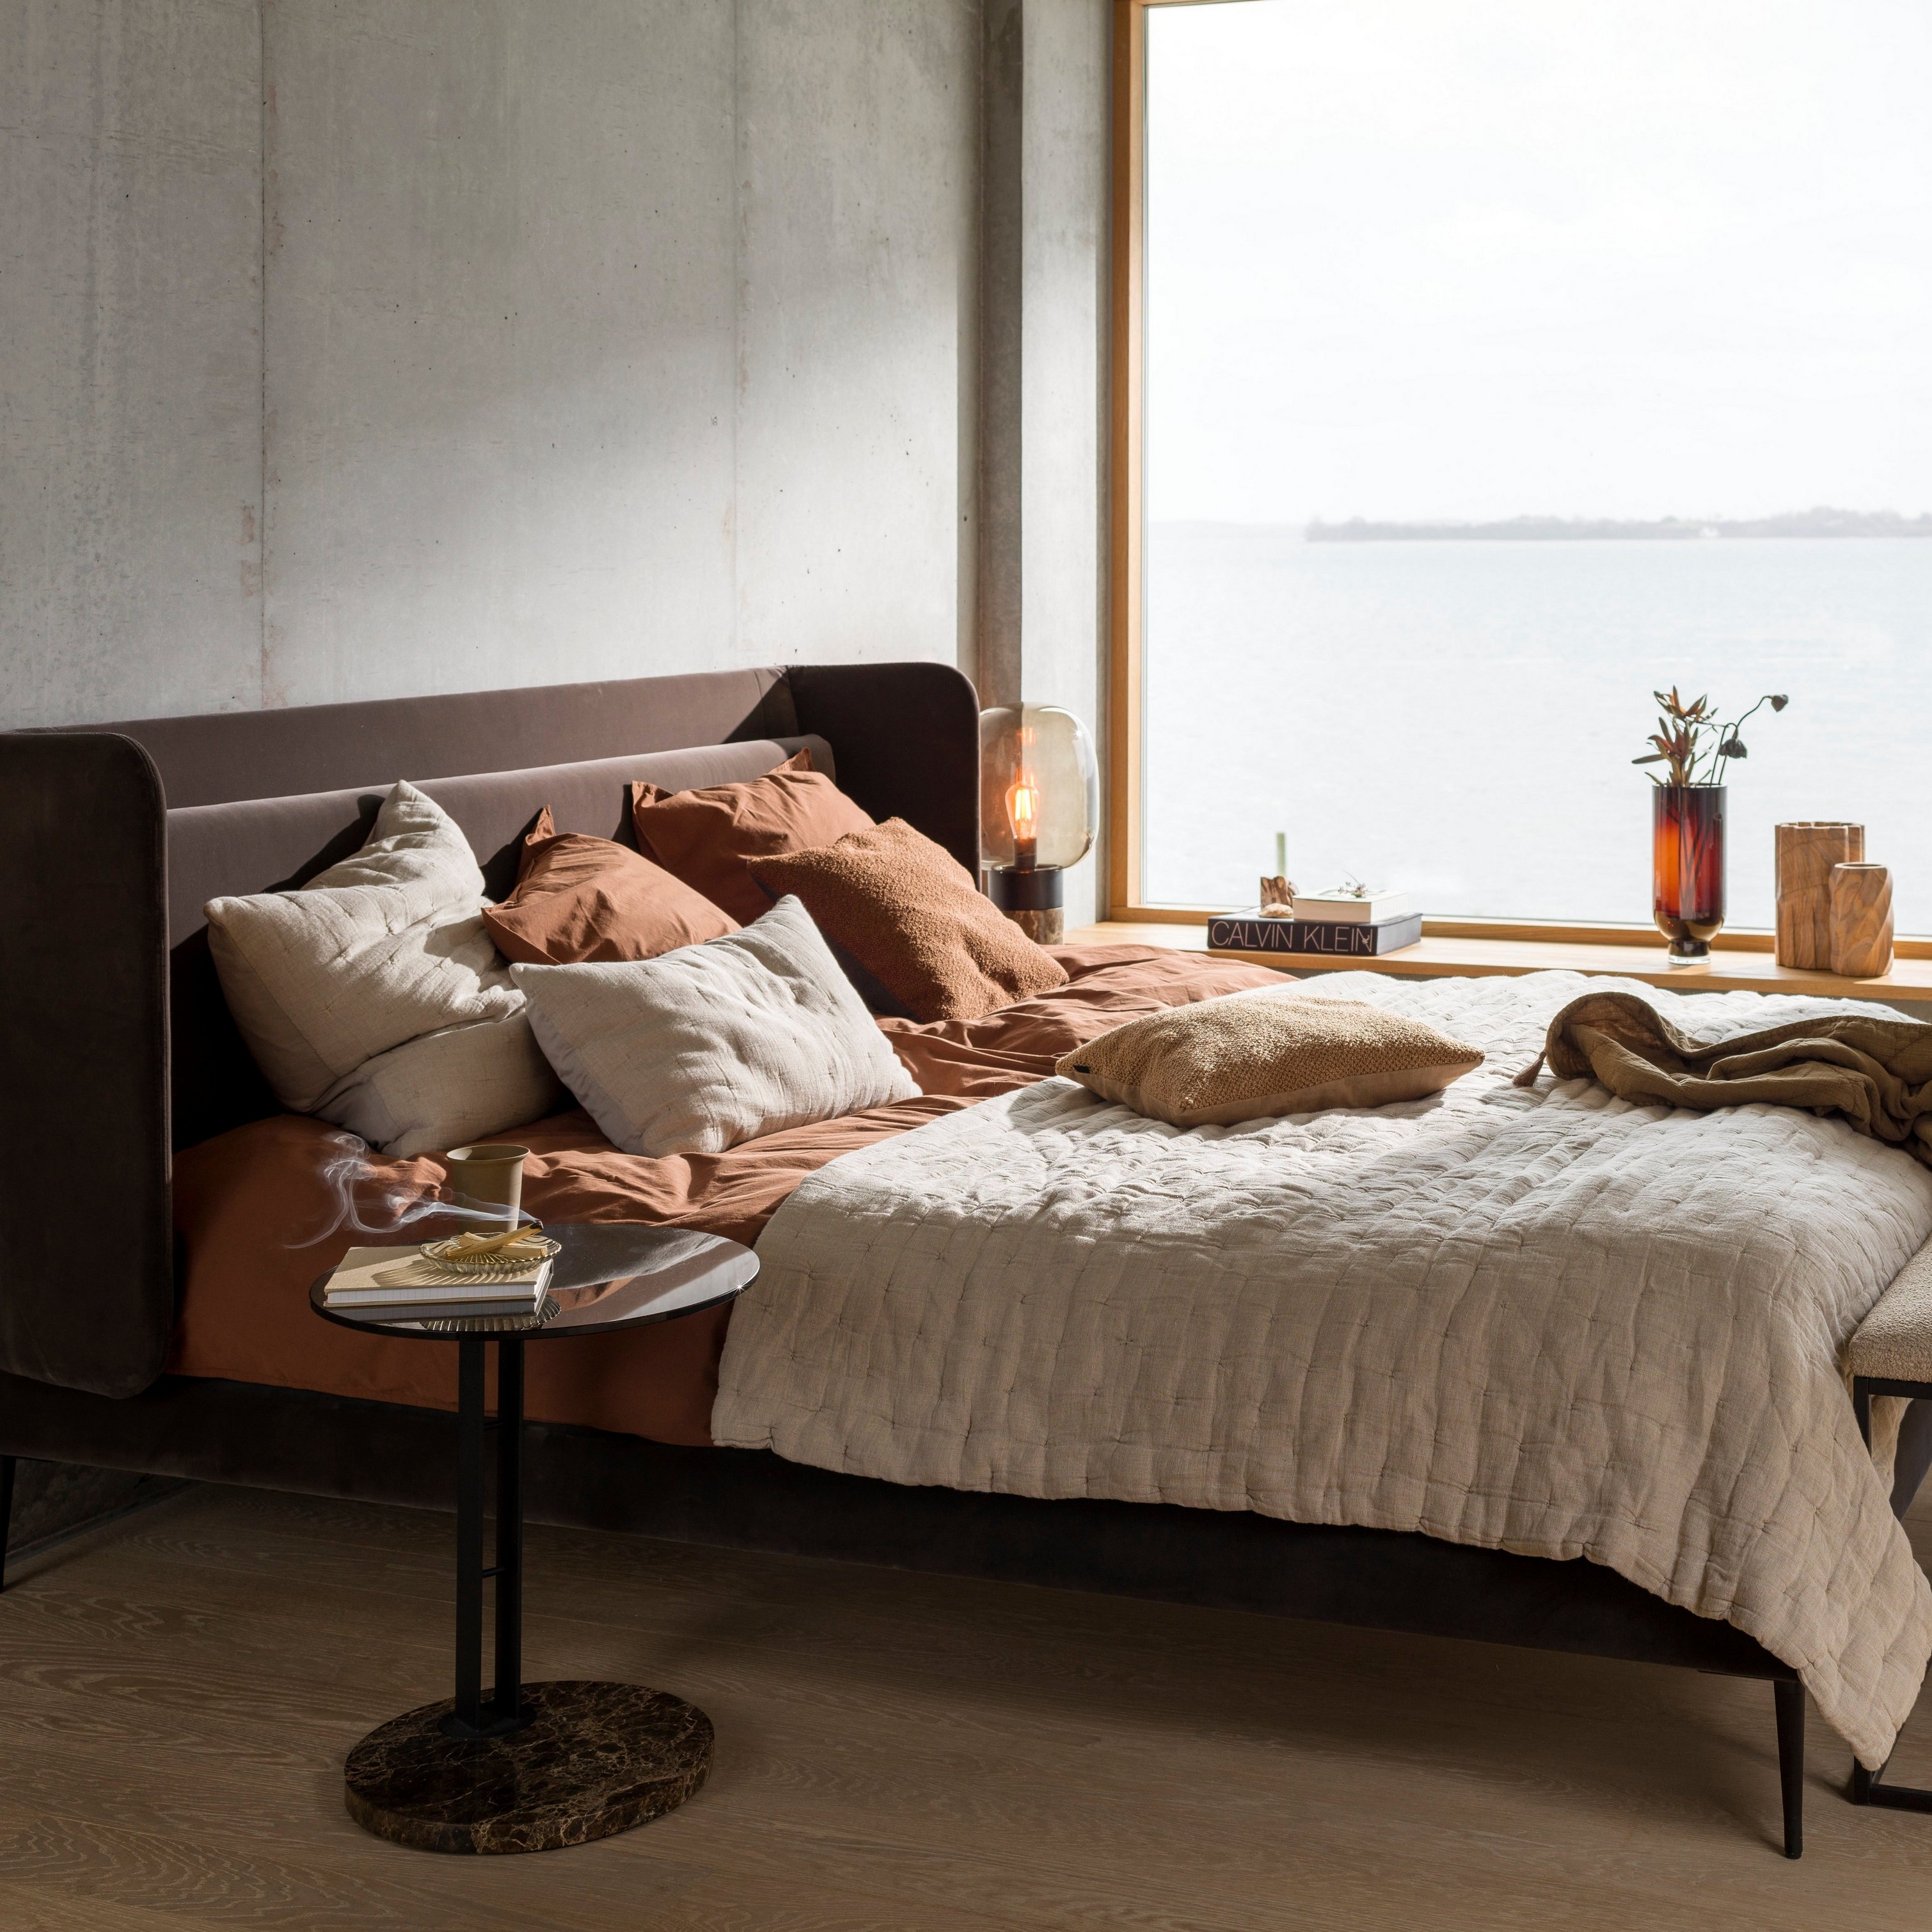 Dormitorio acogedor con vistas al mar, ropa de cama en tonos tierra y una pequeña mesa auxiliar.